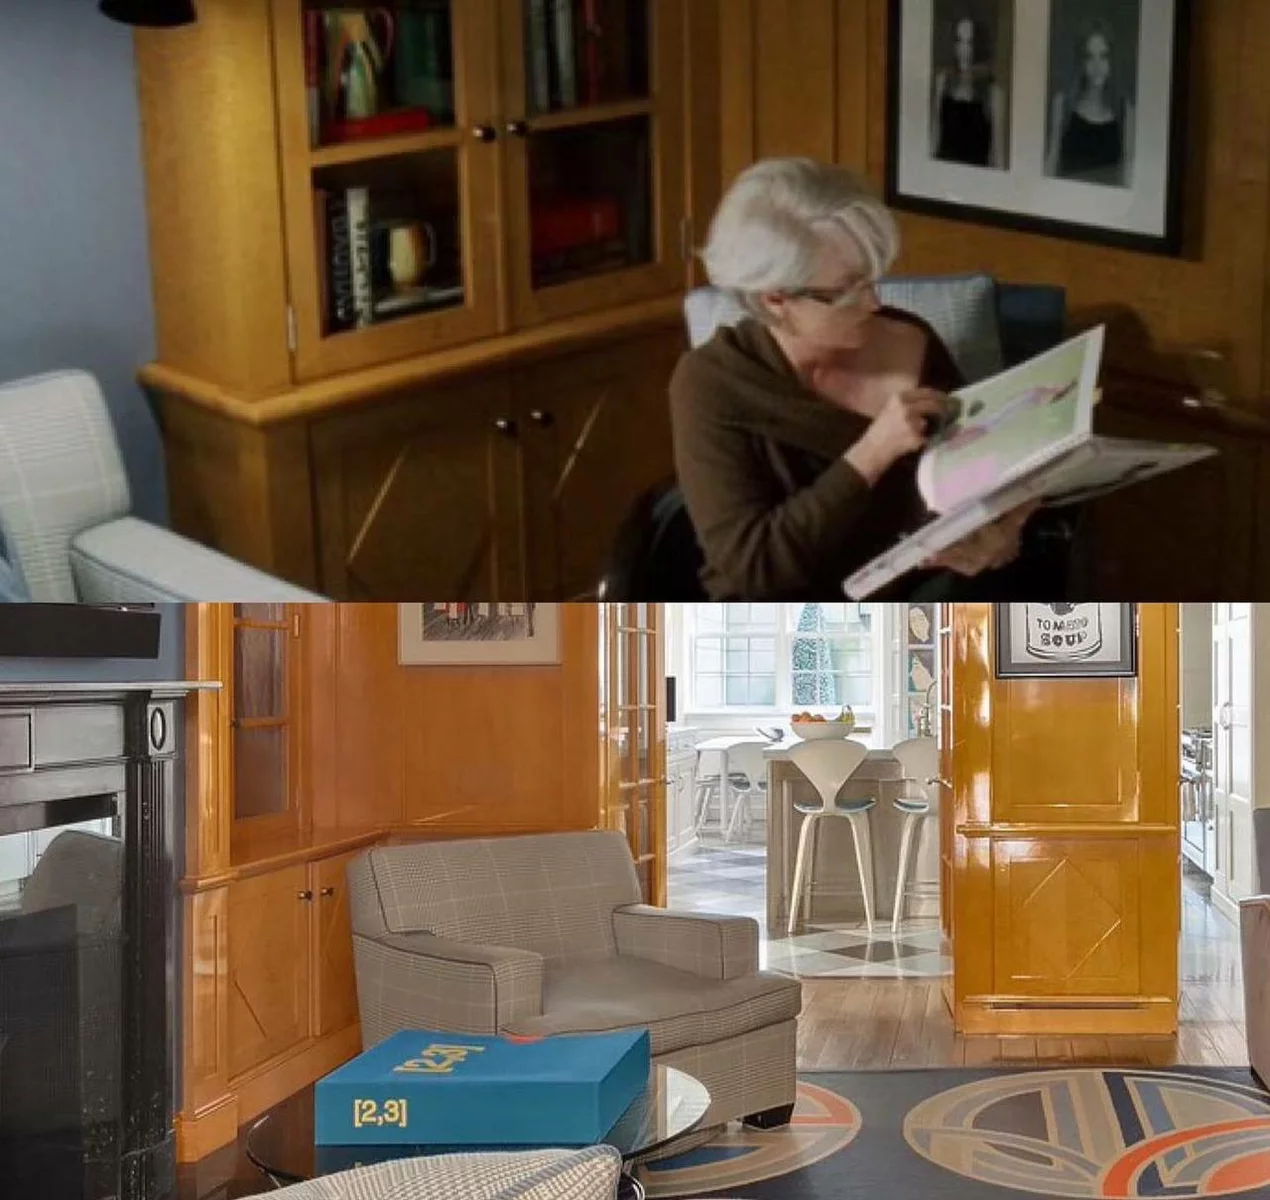 параллель между сценой из фильма и реальным интерьером в доме